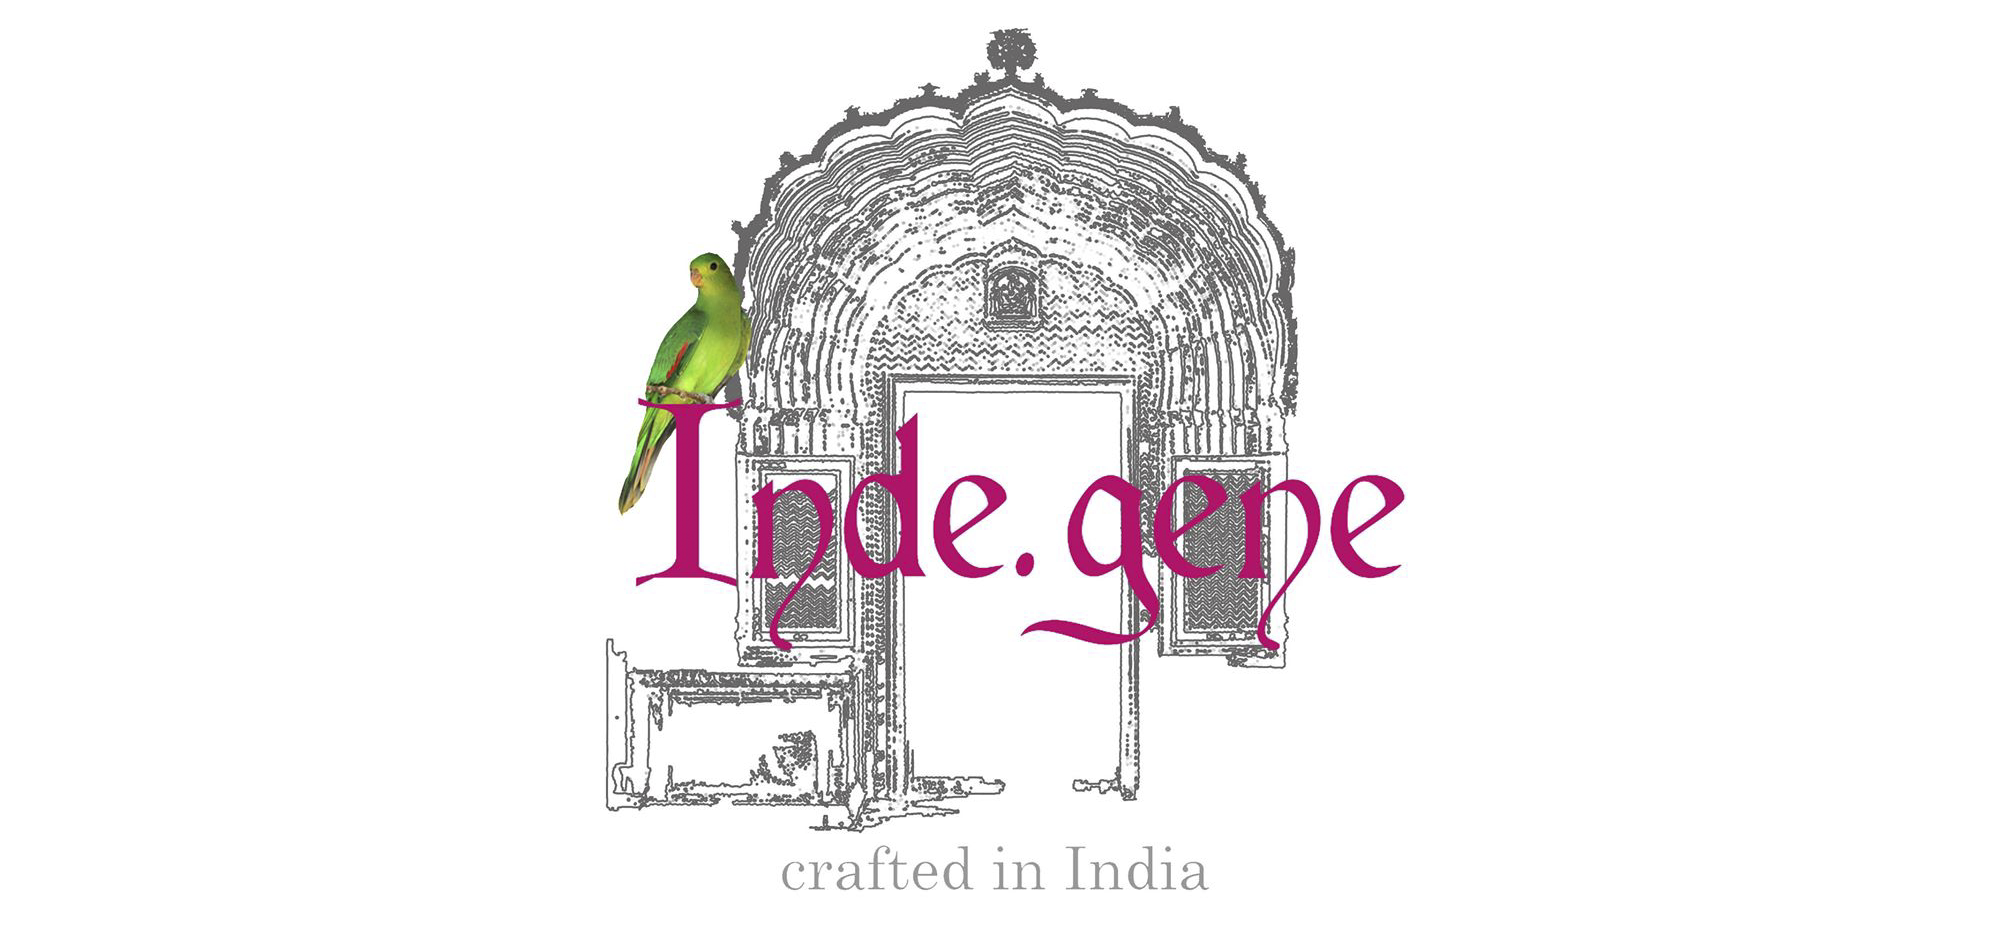 Inde.gene Designer Clothing Brand